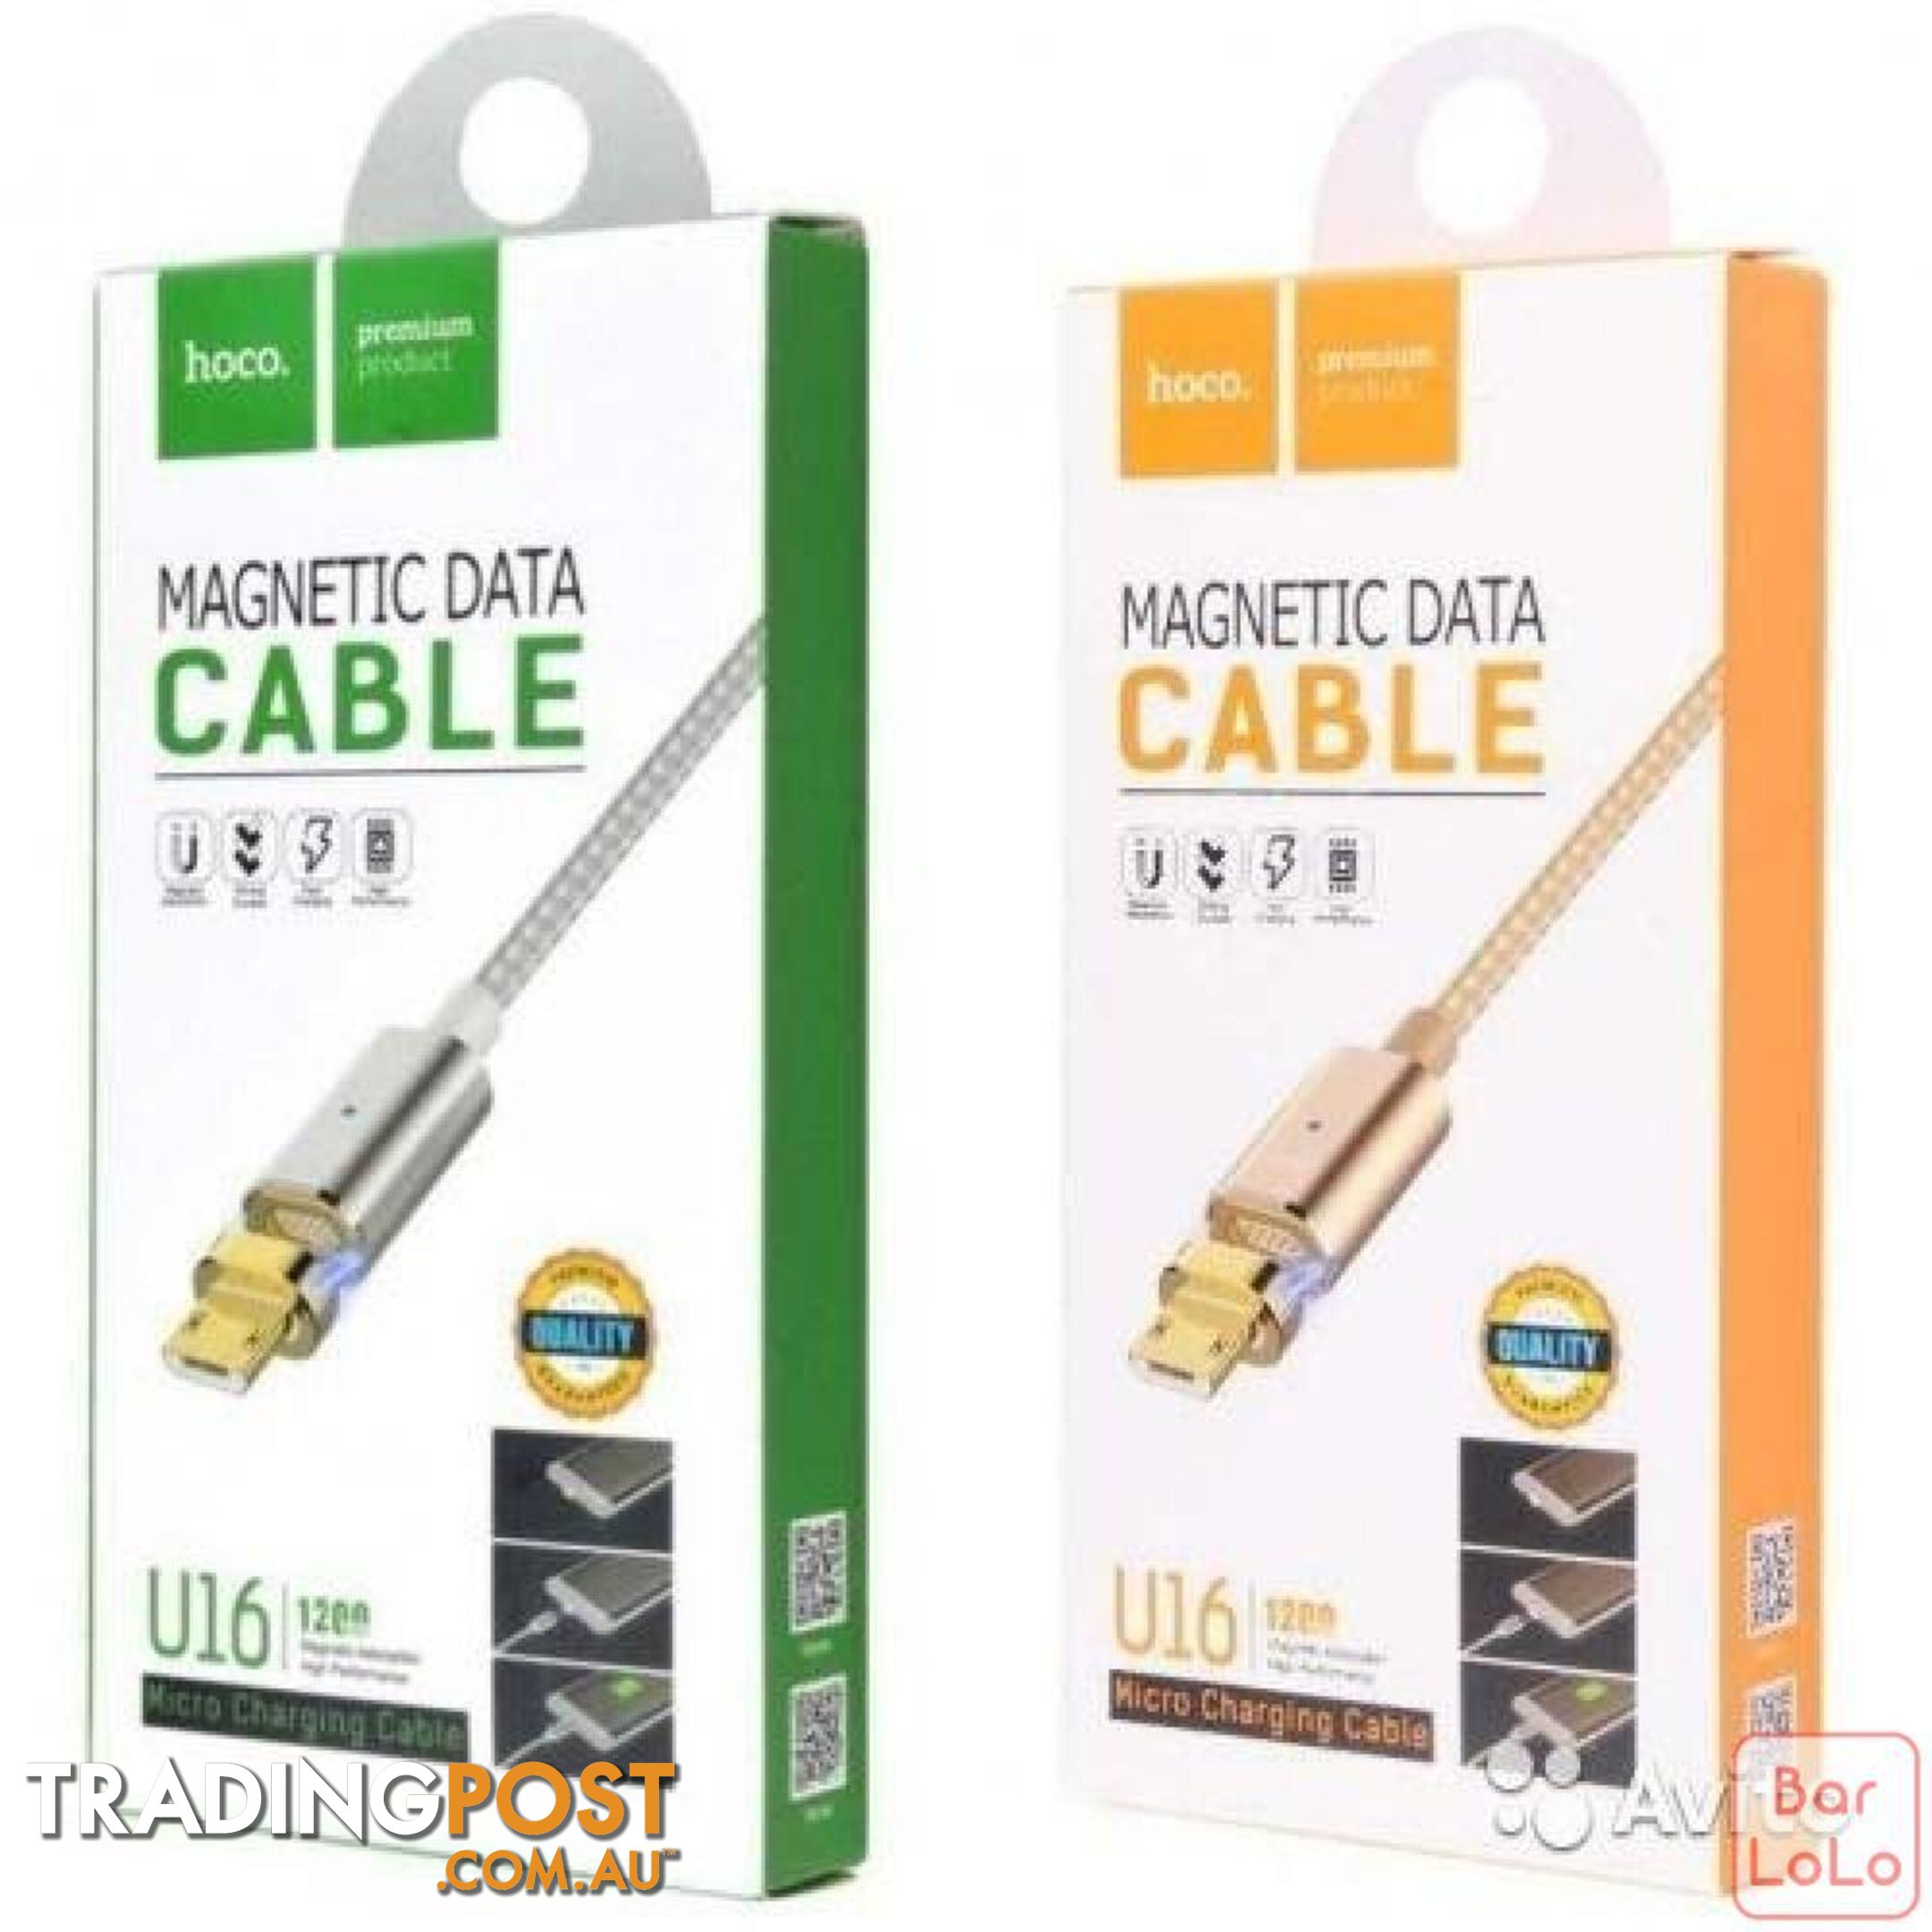 Hoco Premium - Magnetic Cable (U16) - 100207 - Cables